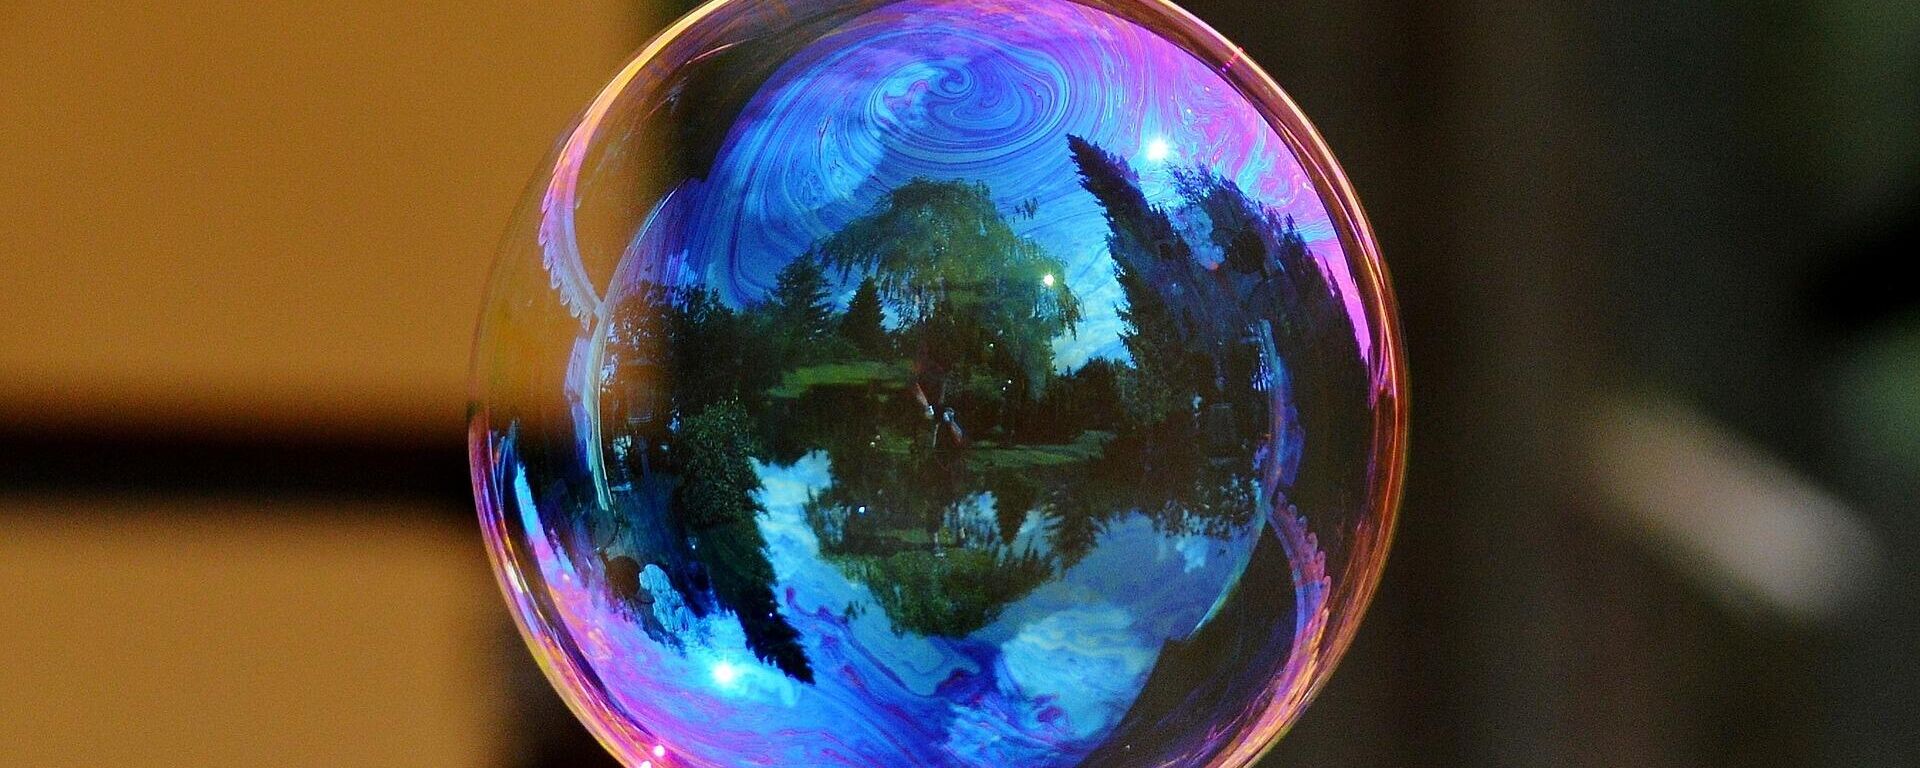 Una burbuja - Sputnik Mundo, 1920, 27.02.2021